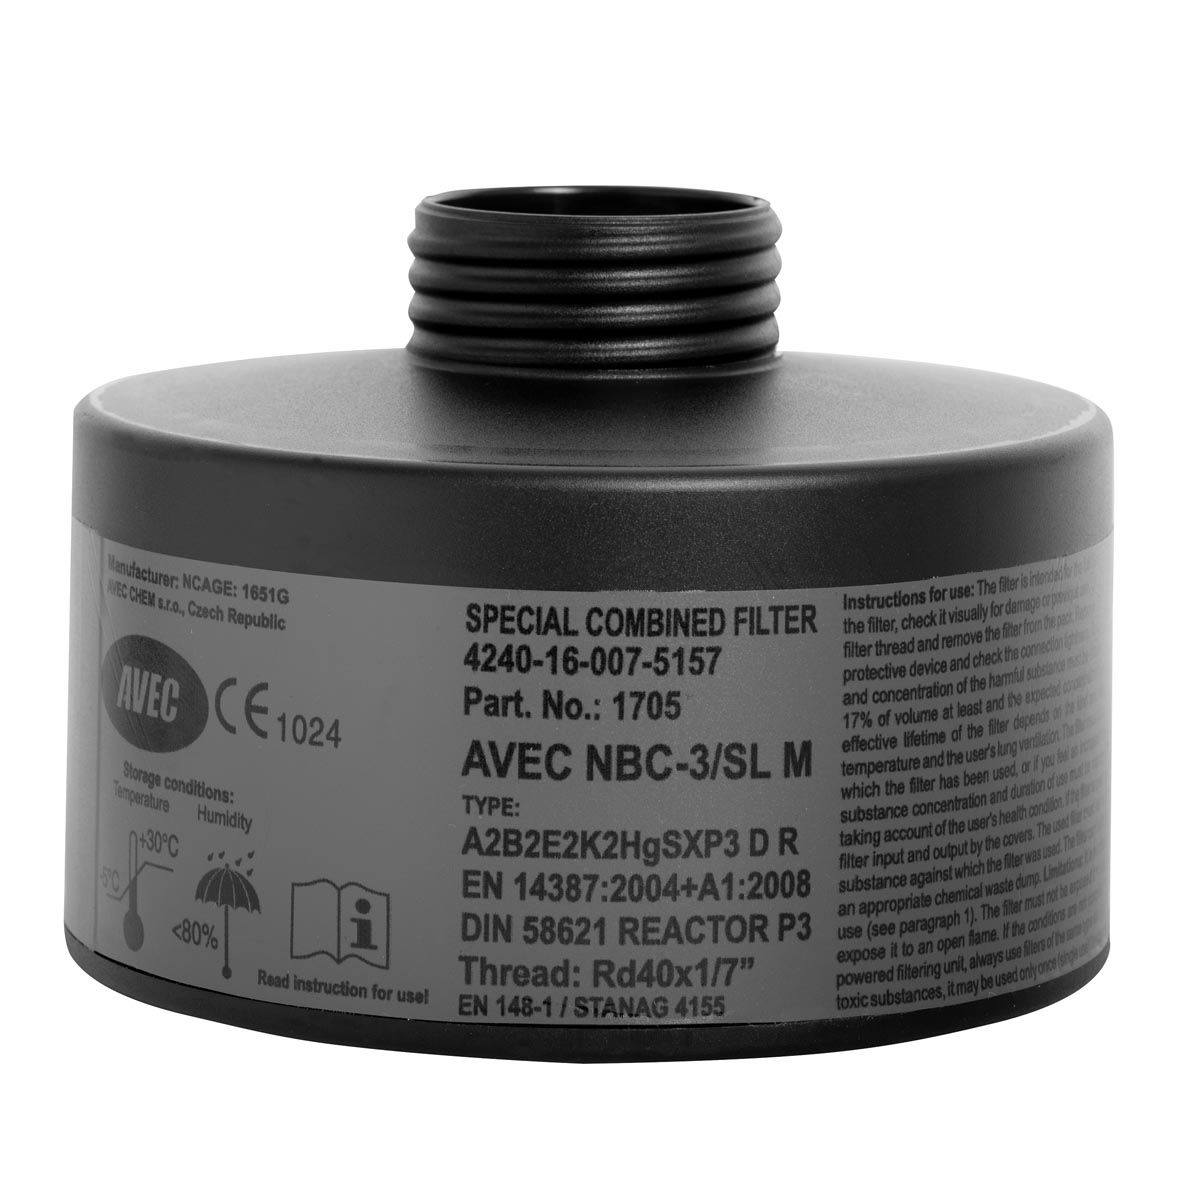 AVEC CHEM Nuklear-Filter - NBC-3/SL M REACTOR - für Atemschutz-Vollmasken - mit Rd40-Anschluss (u.a. für radioaktives Jod)